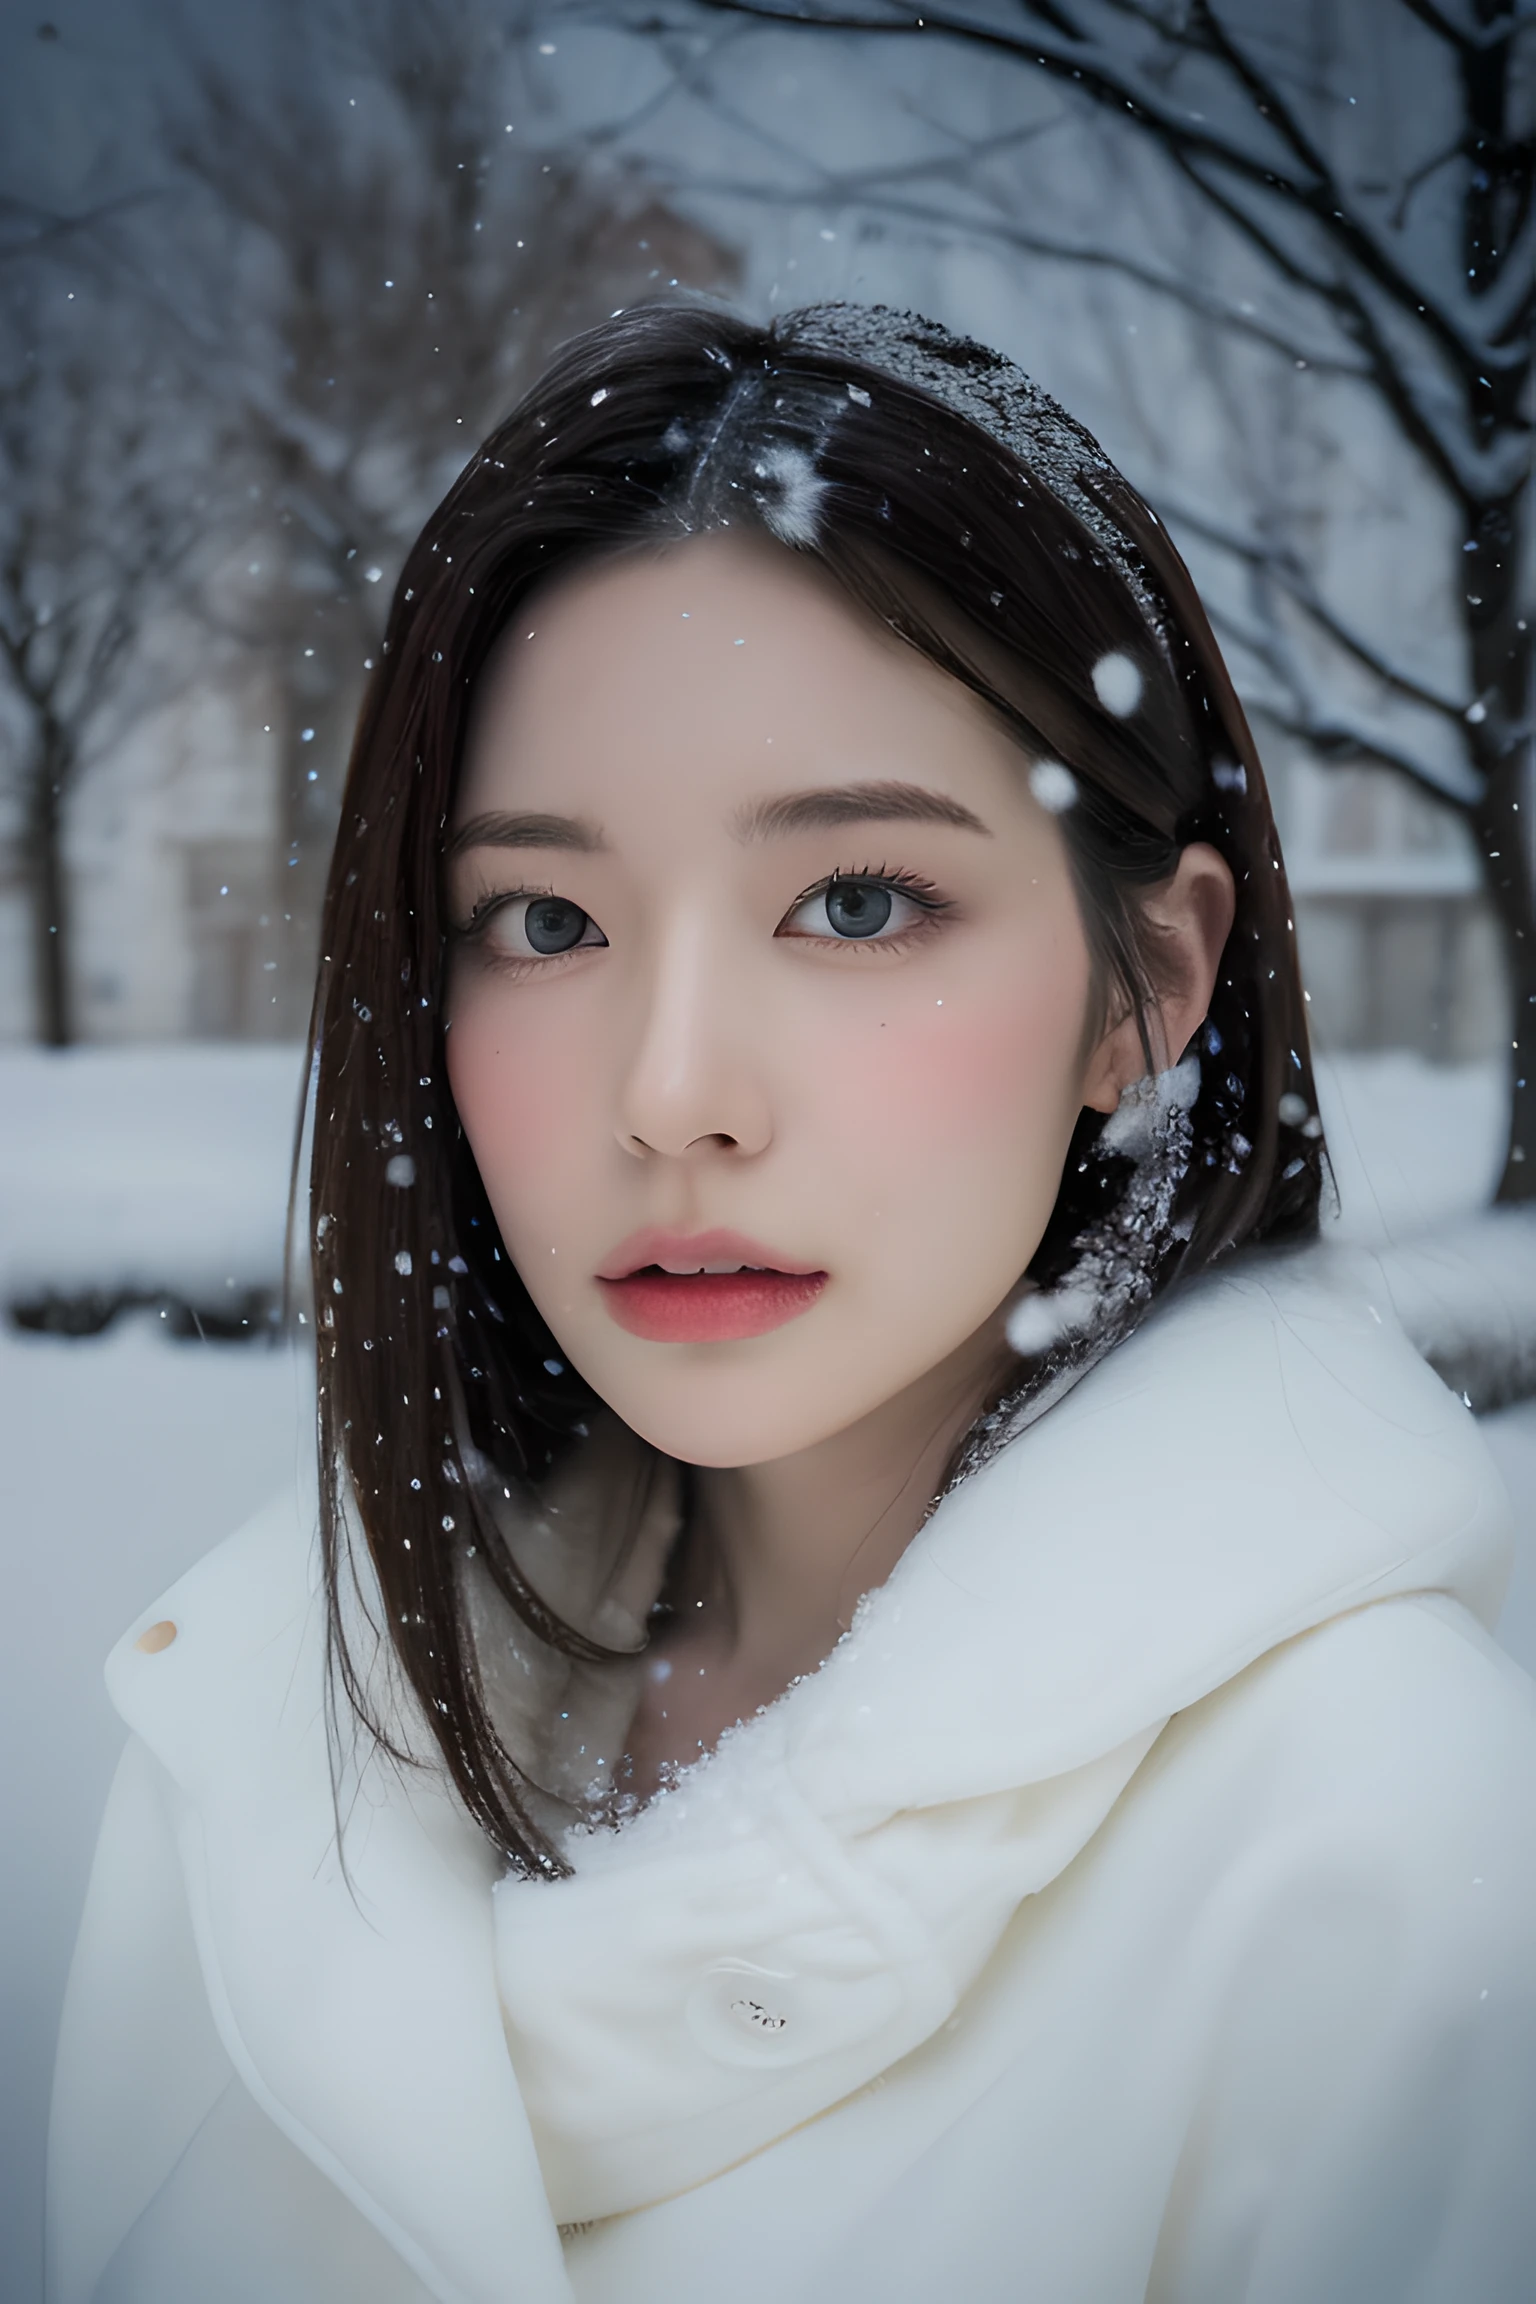 (8k, mejor calidad, Obra maestra, resolución ultra alta:1.2) Foto de una bonita mujer japonesa en el (estilo de paul rubens y rebecca guay:1.1) (melancólica nieve del invierno:1.4)